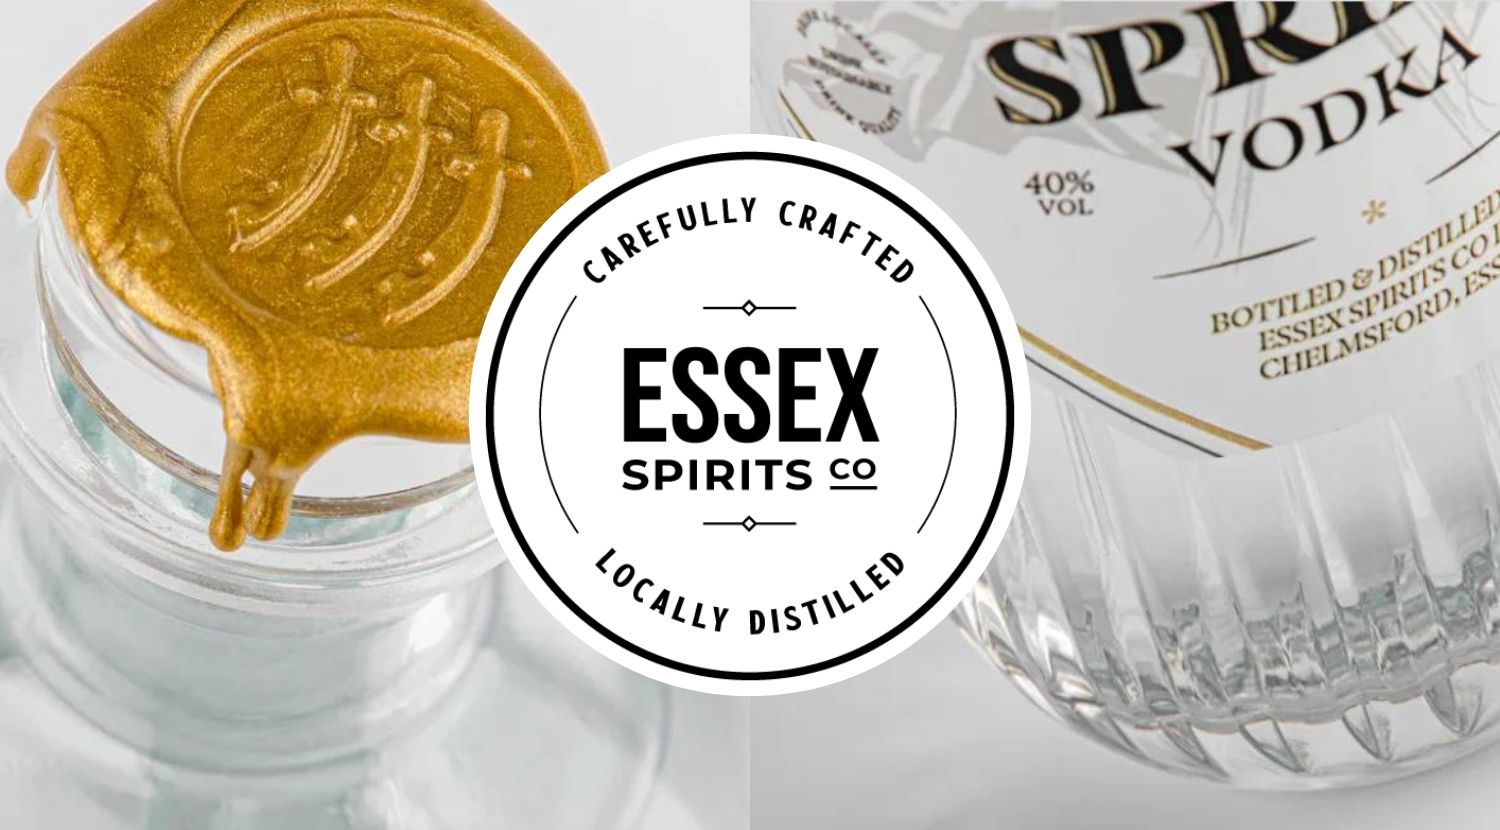 Essex Spirits Co